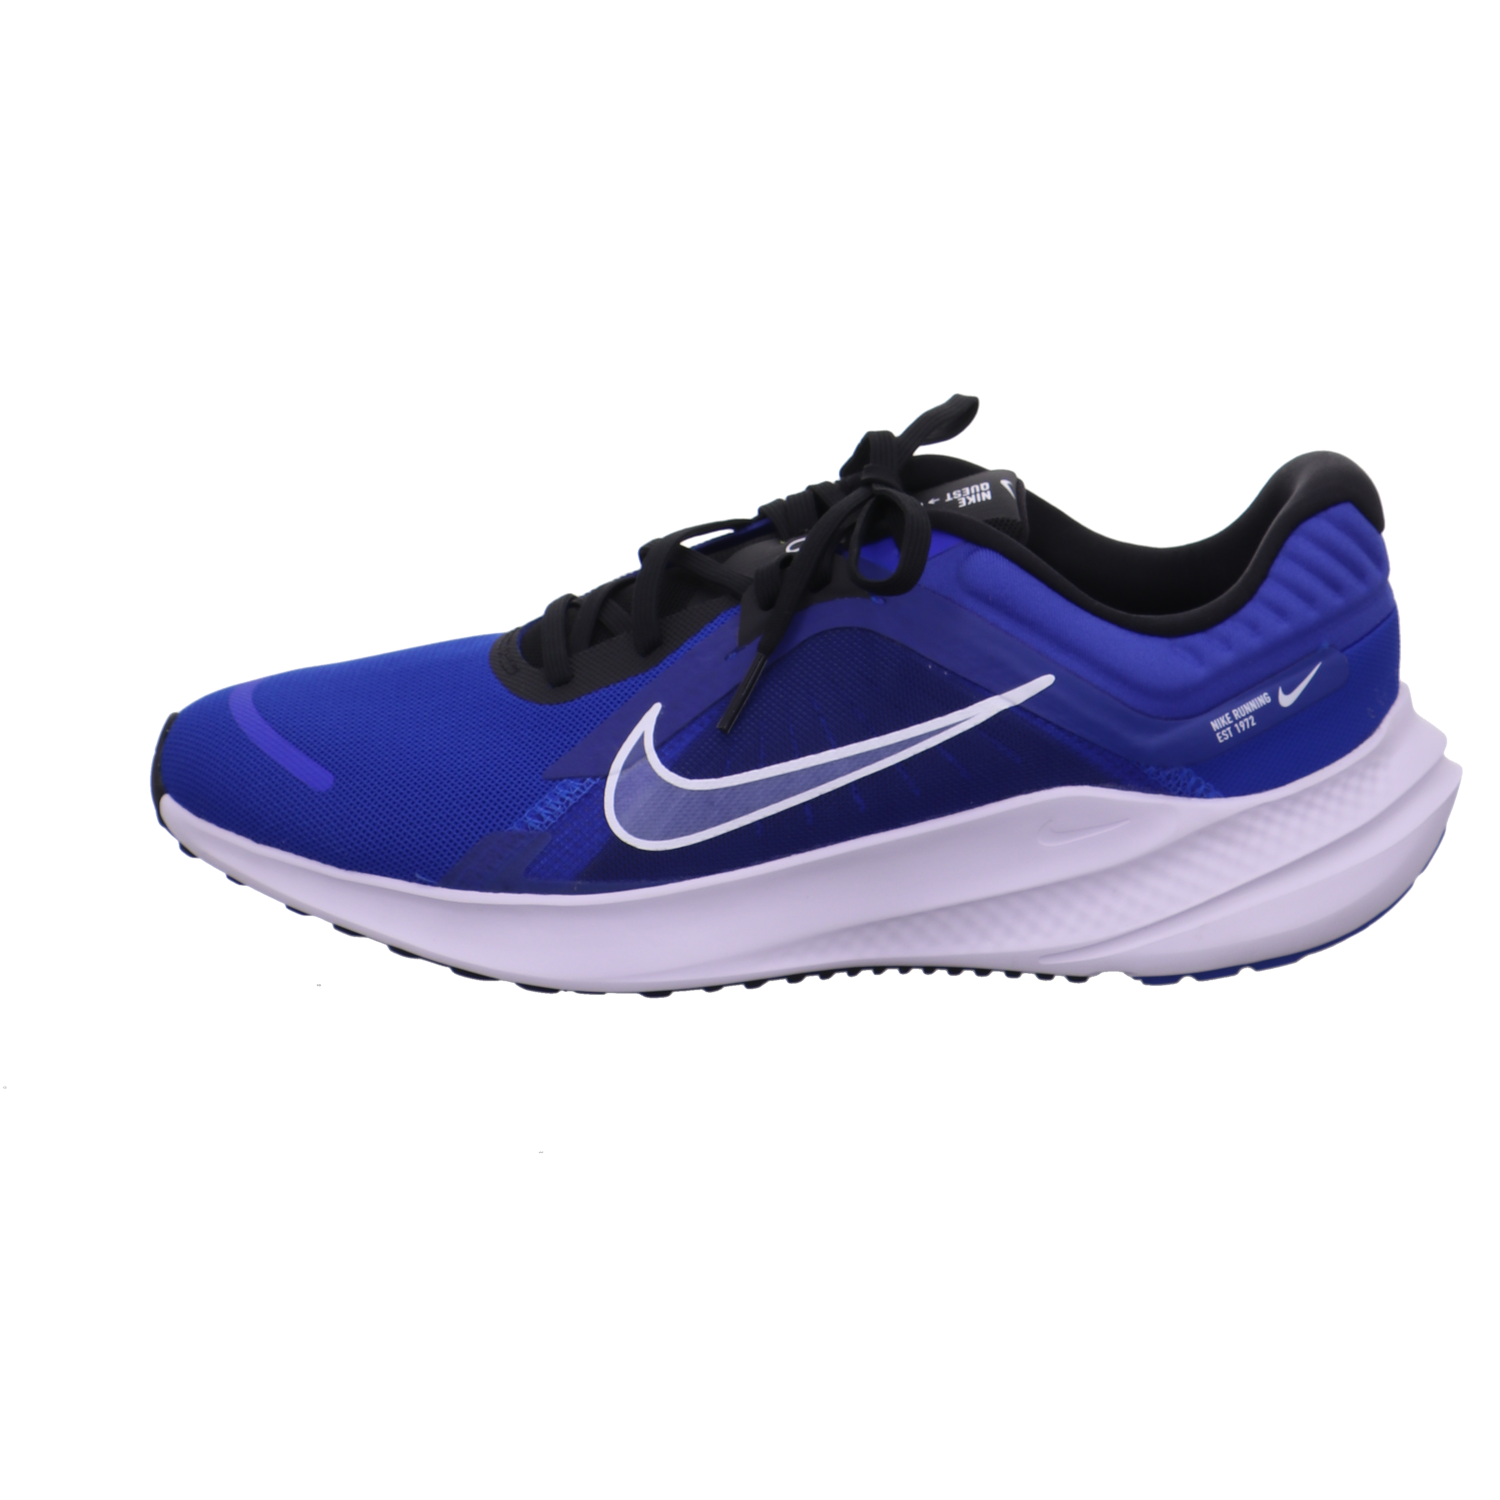 Nike Training und Hallenschuhe blau kombi Bild1